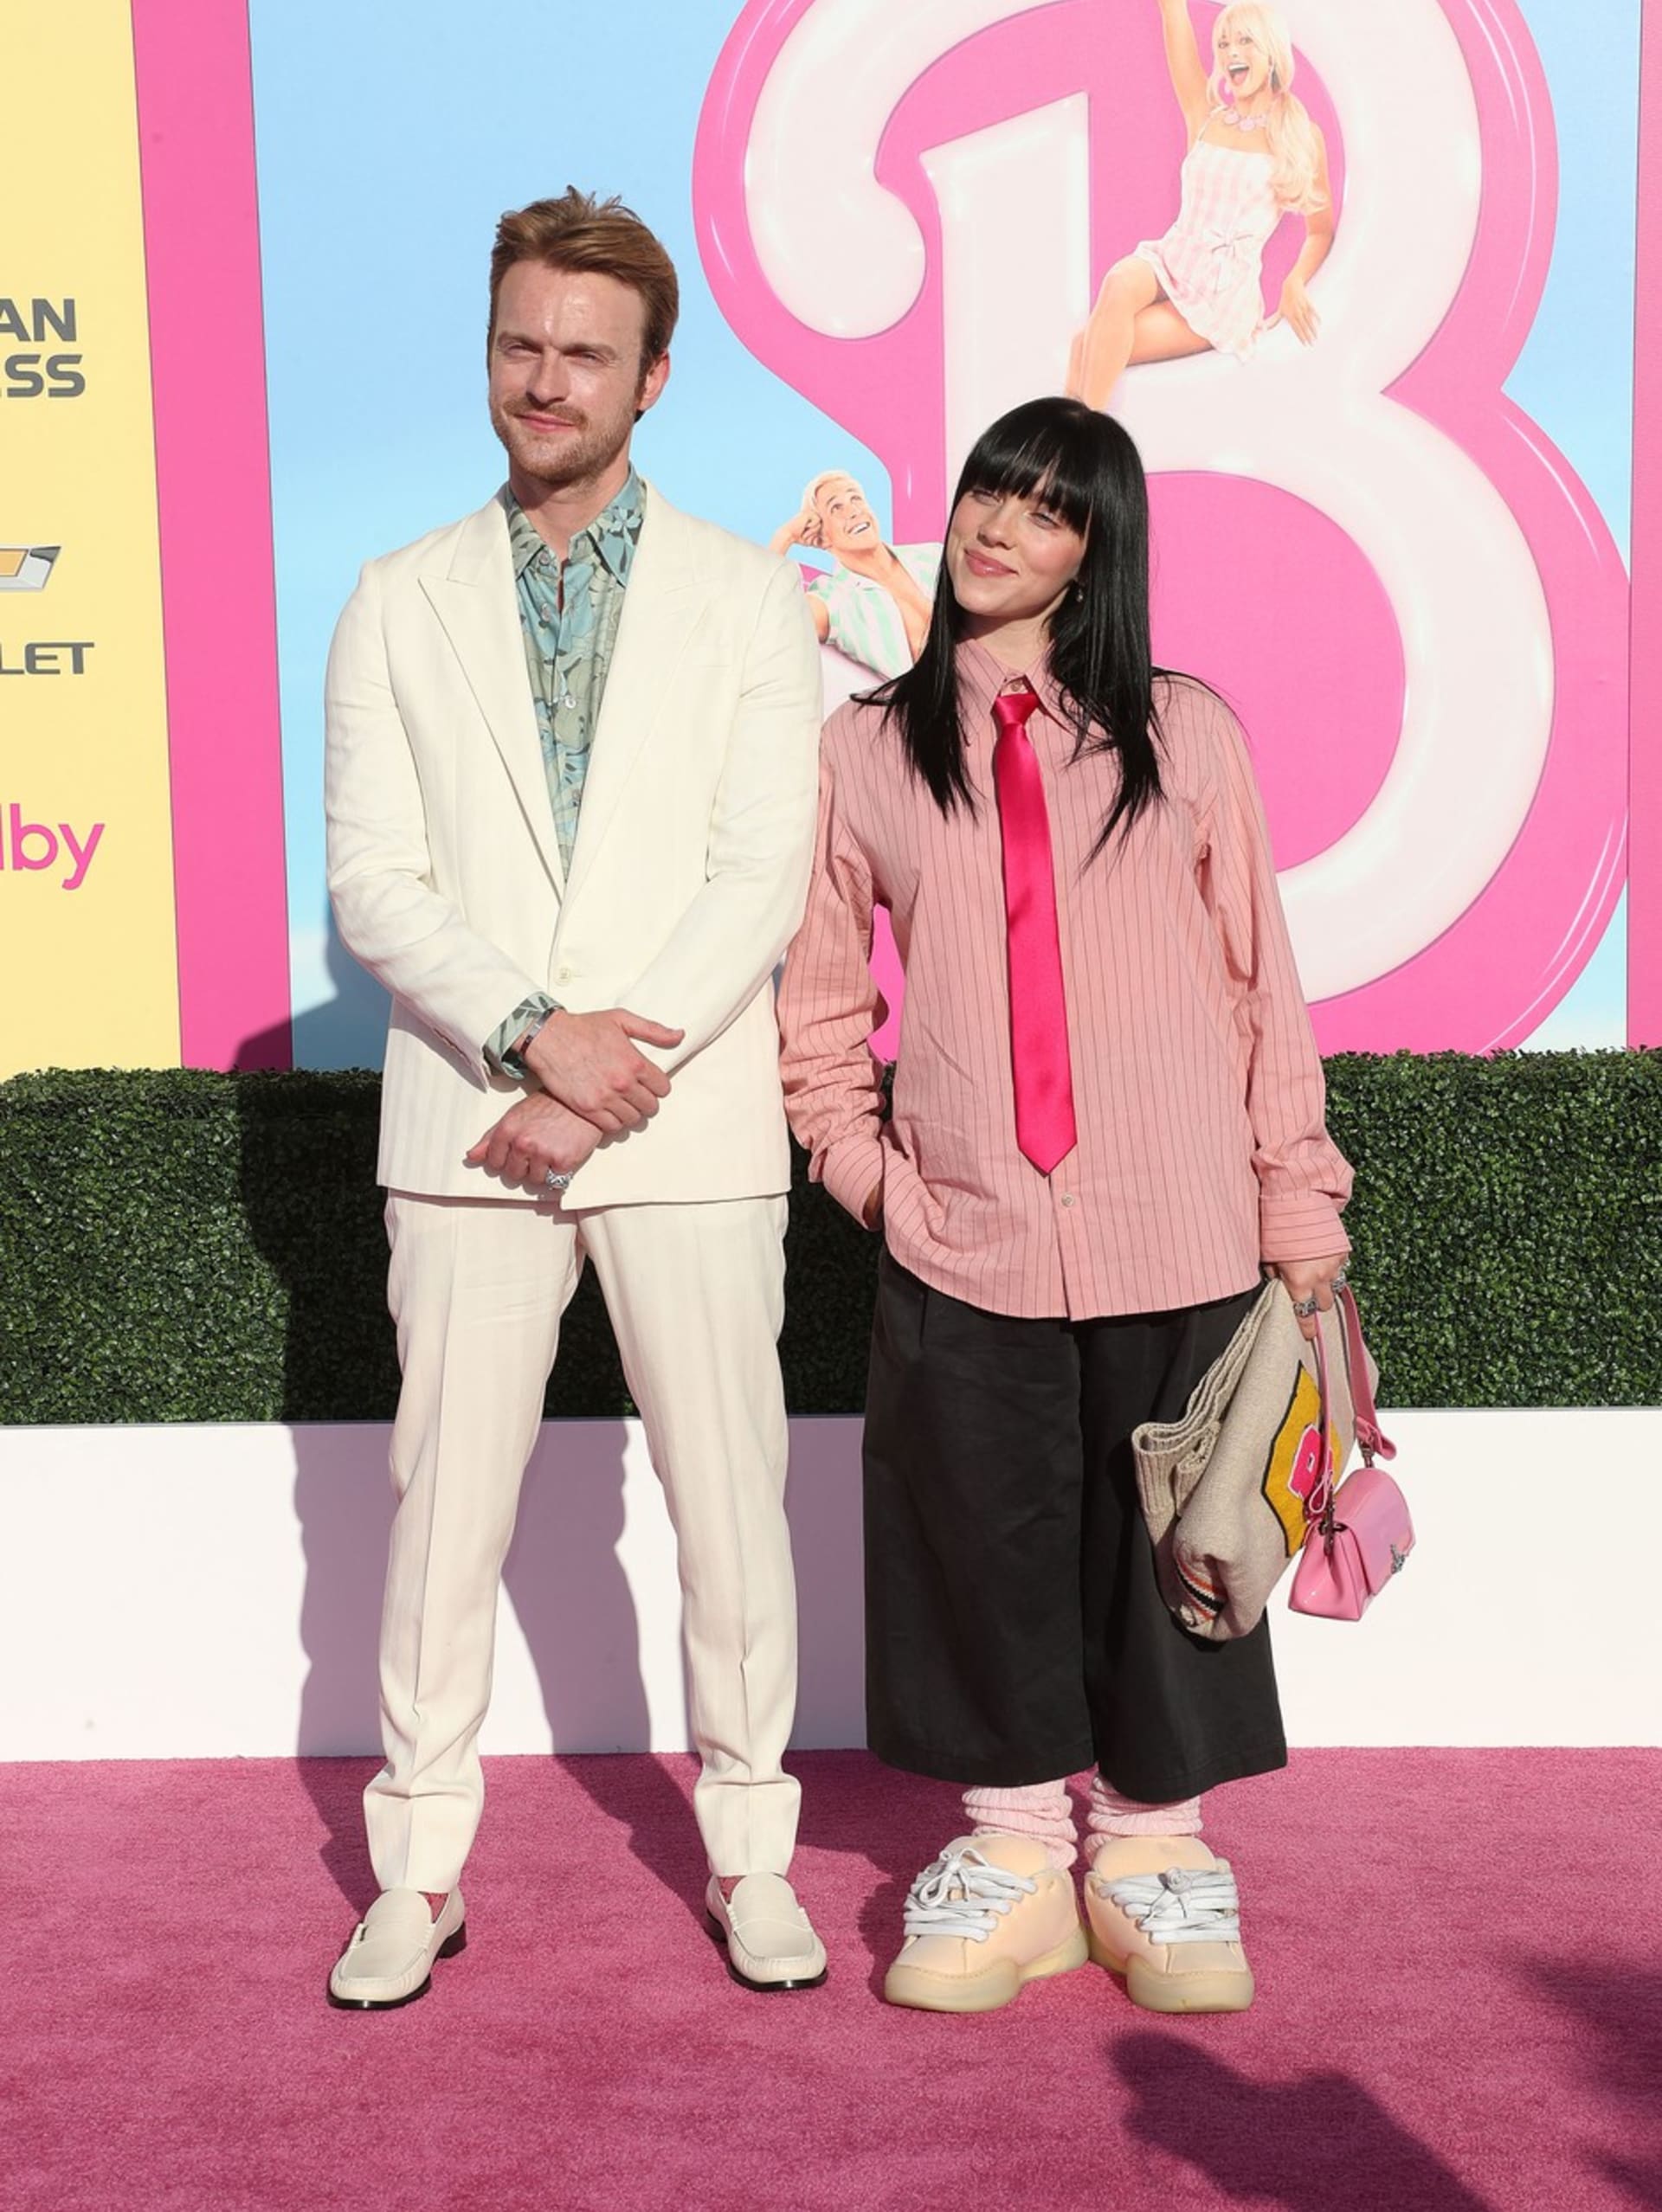 Zpěvačka Billie Eilish s bratrem Finneasem O'Connellem na premiéře filmu Barbie v Los Angeles. Jiráčkovou outfit zpěvačky zklamal.